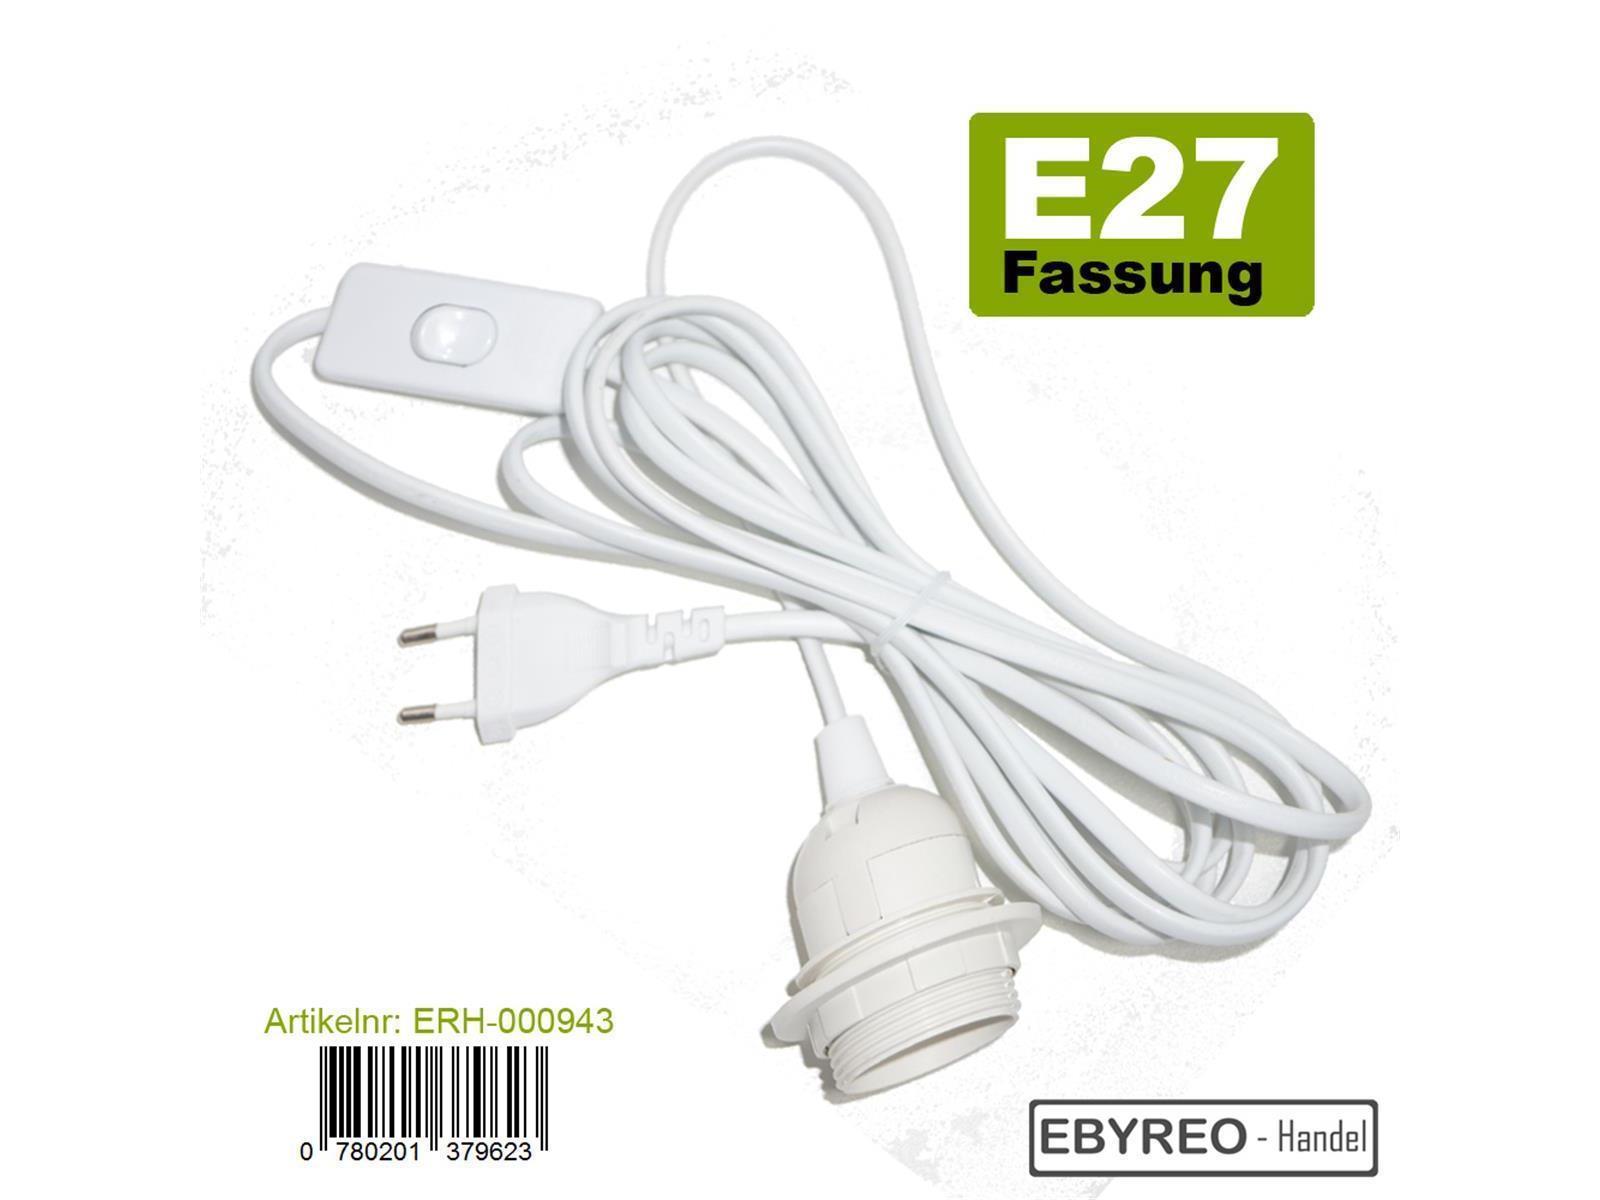 EbyReo® - Netzkabel mit Schalter und Fassung E27